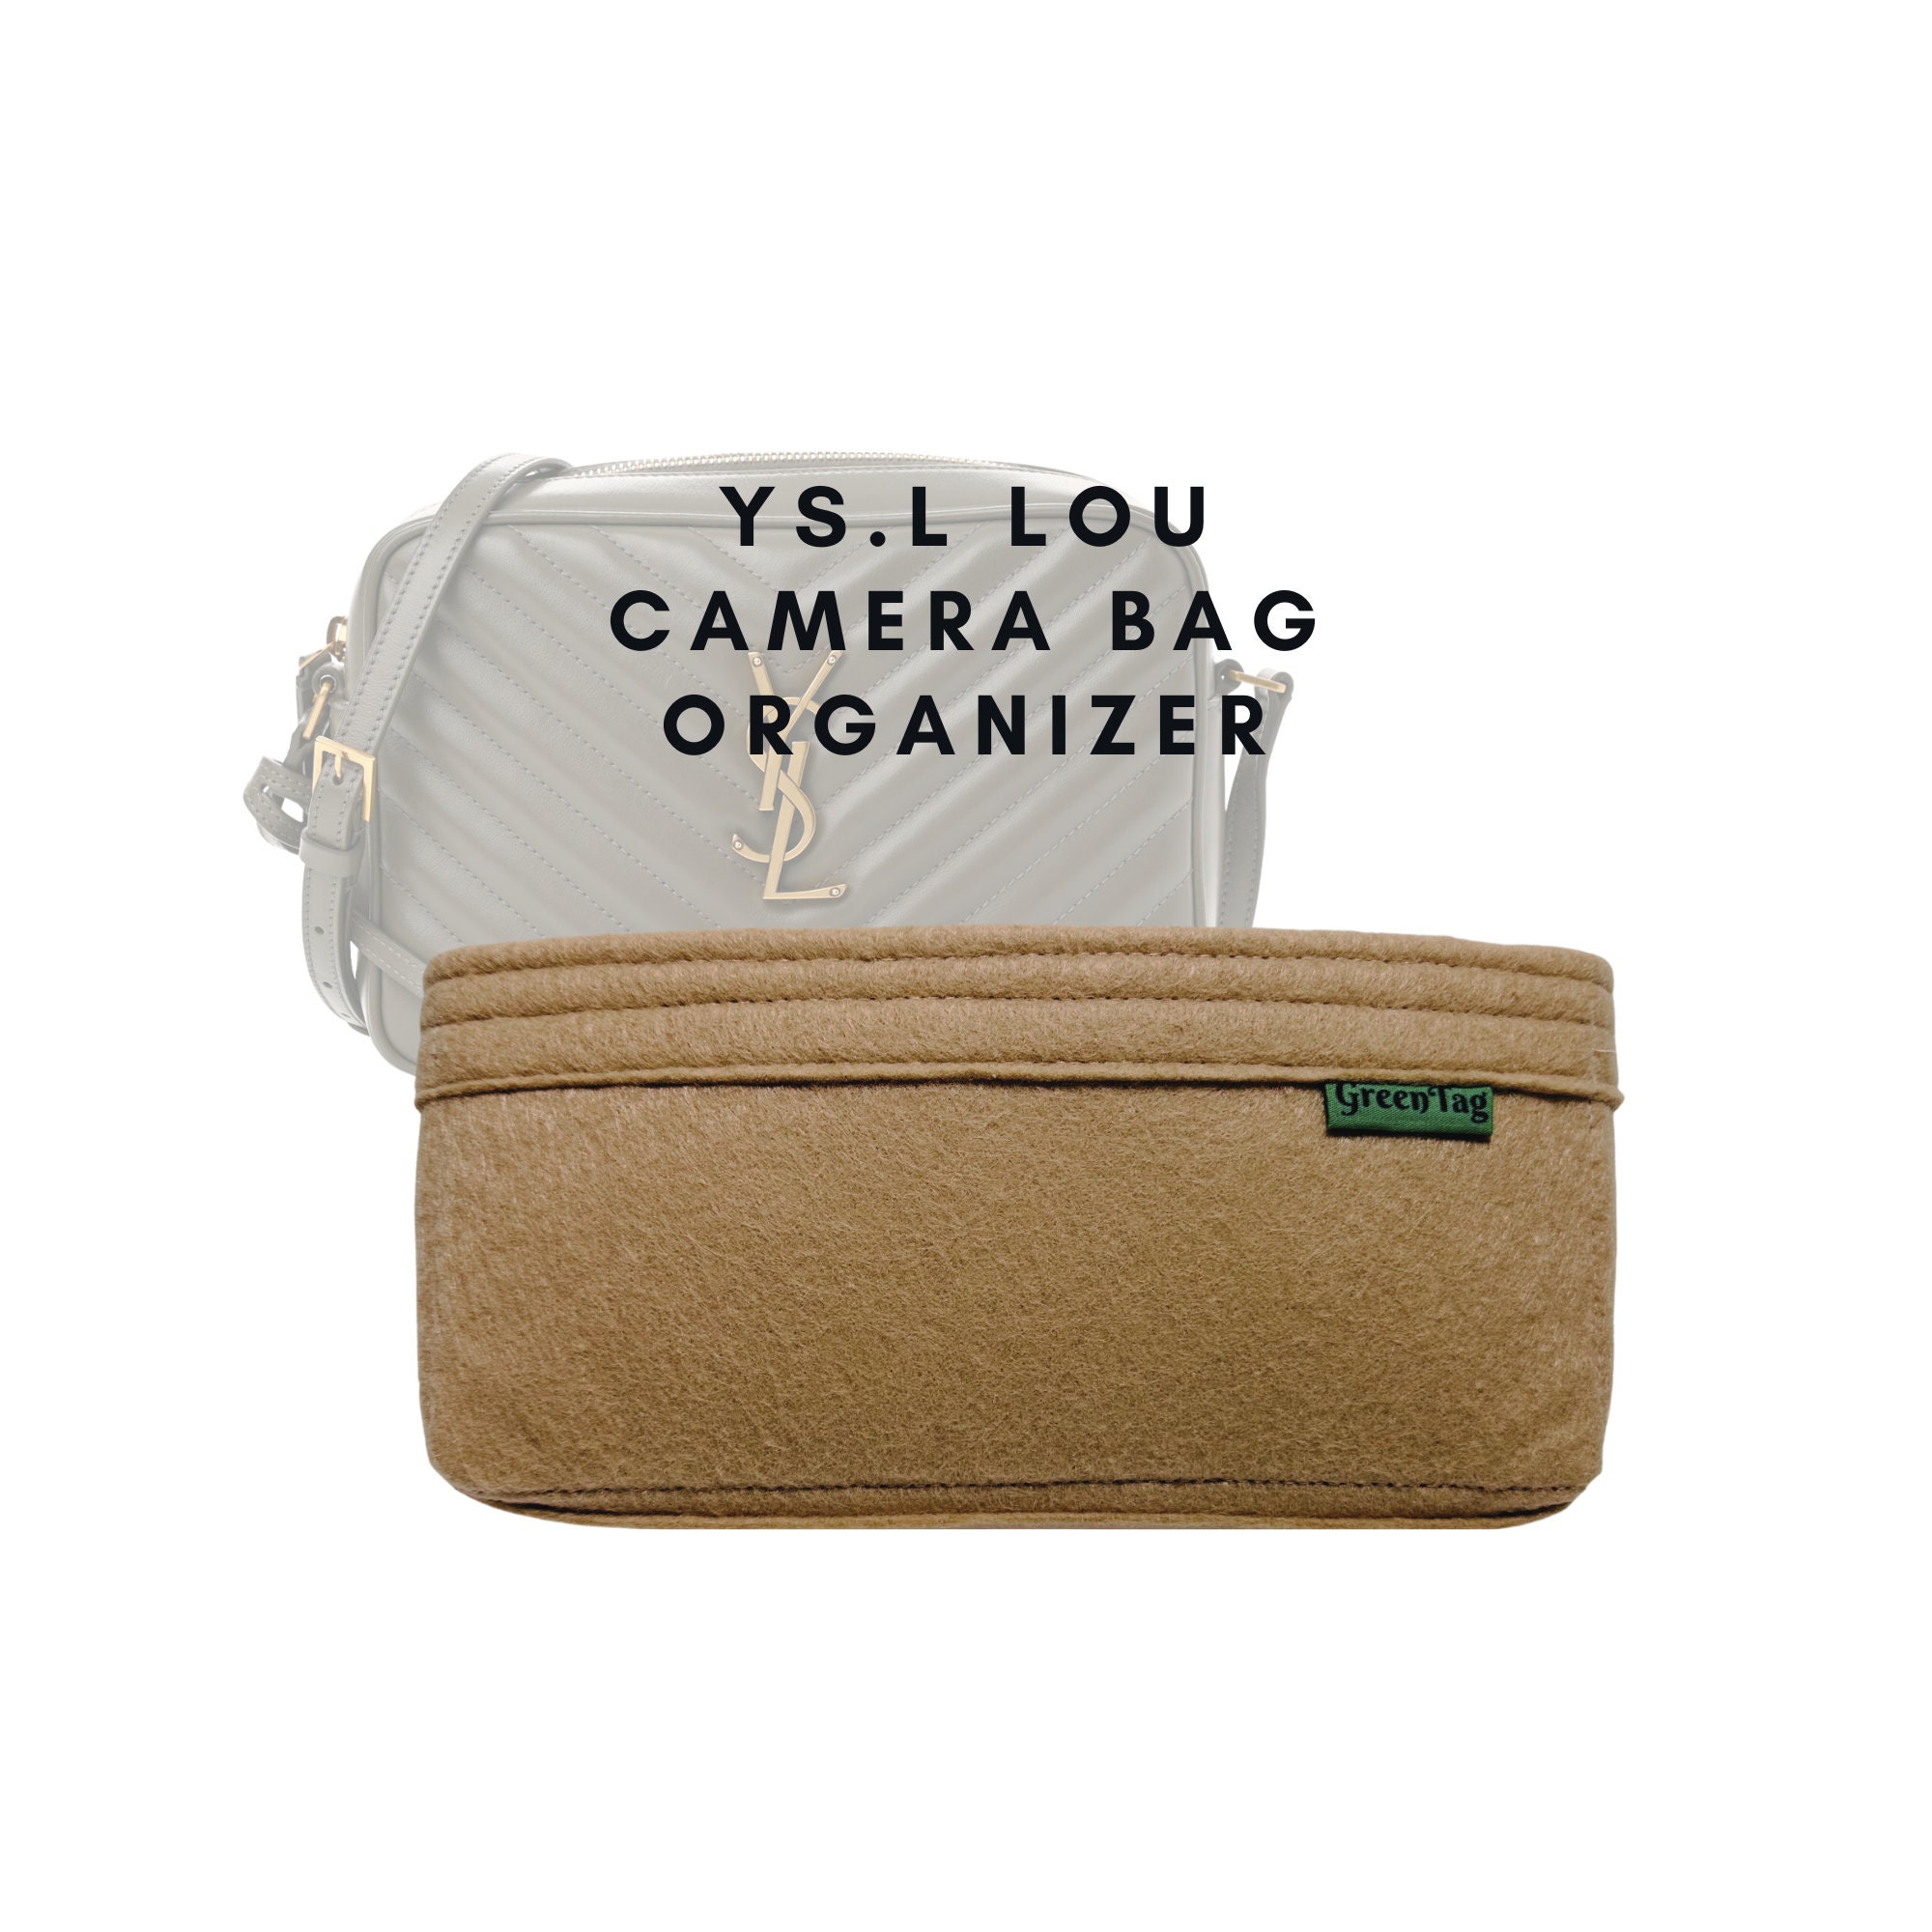 For lou Camera Bag Bag Insert Organizer Purse 